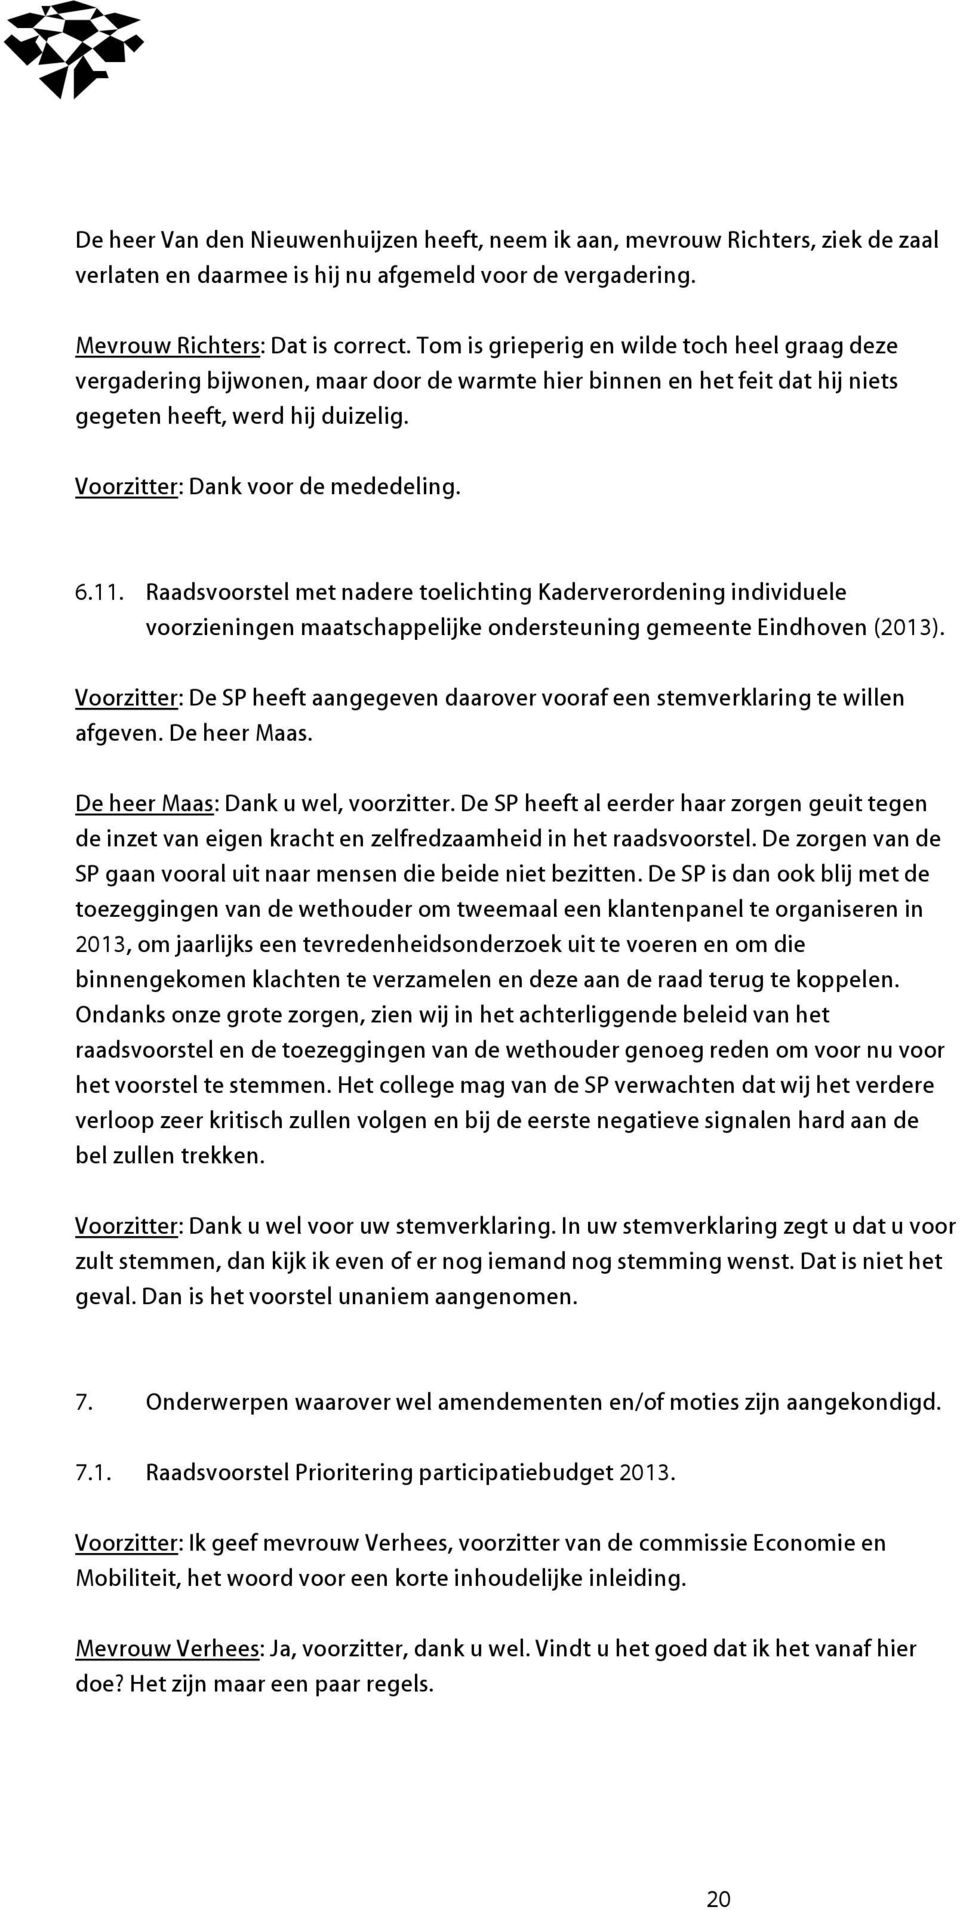 11. Raadsvoorstel met nadere toelichting Kaderverordening individuele voorzieningen maatschappelijke ondersteuning gemeente Eindhoven (2013).